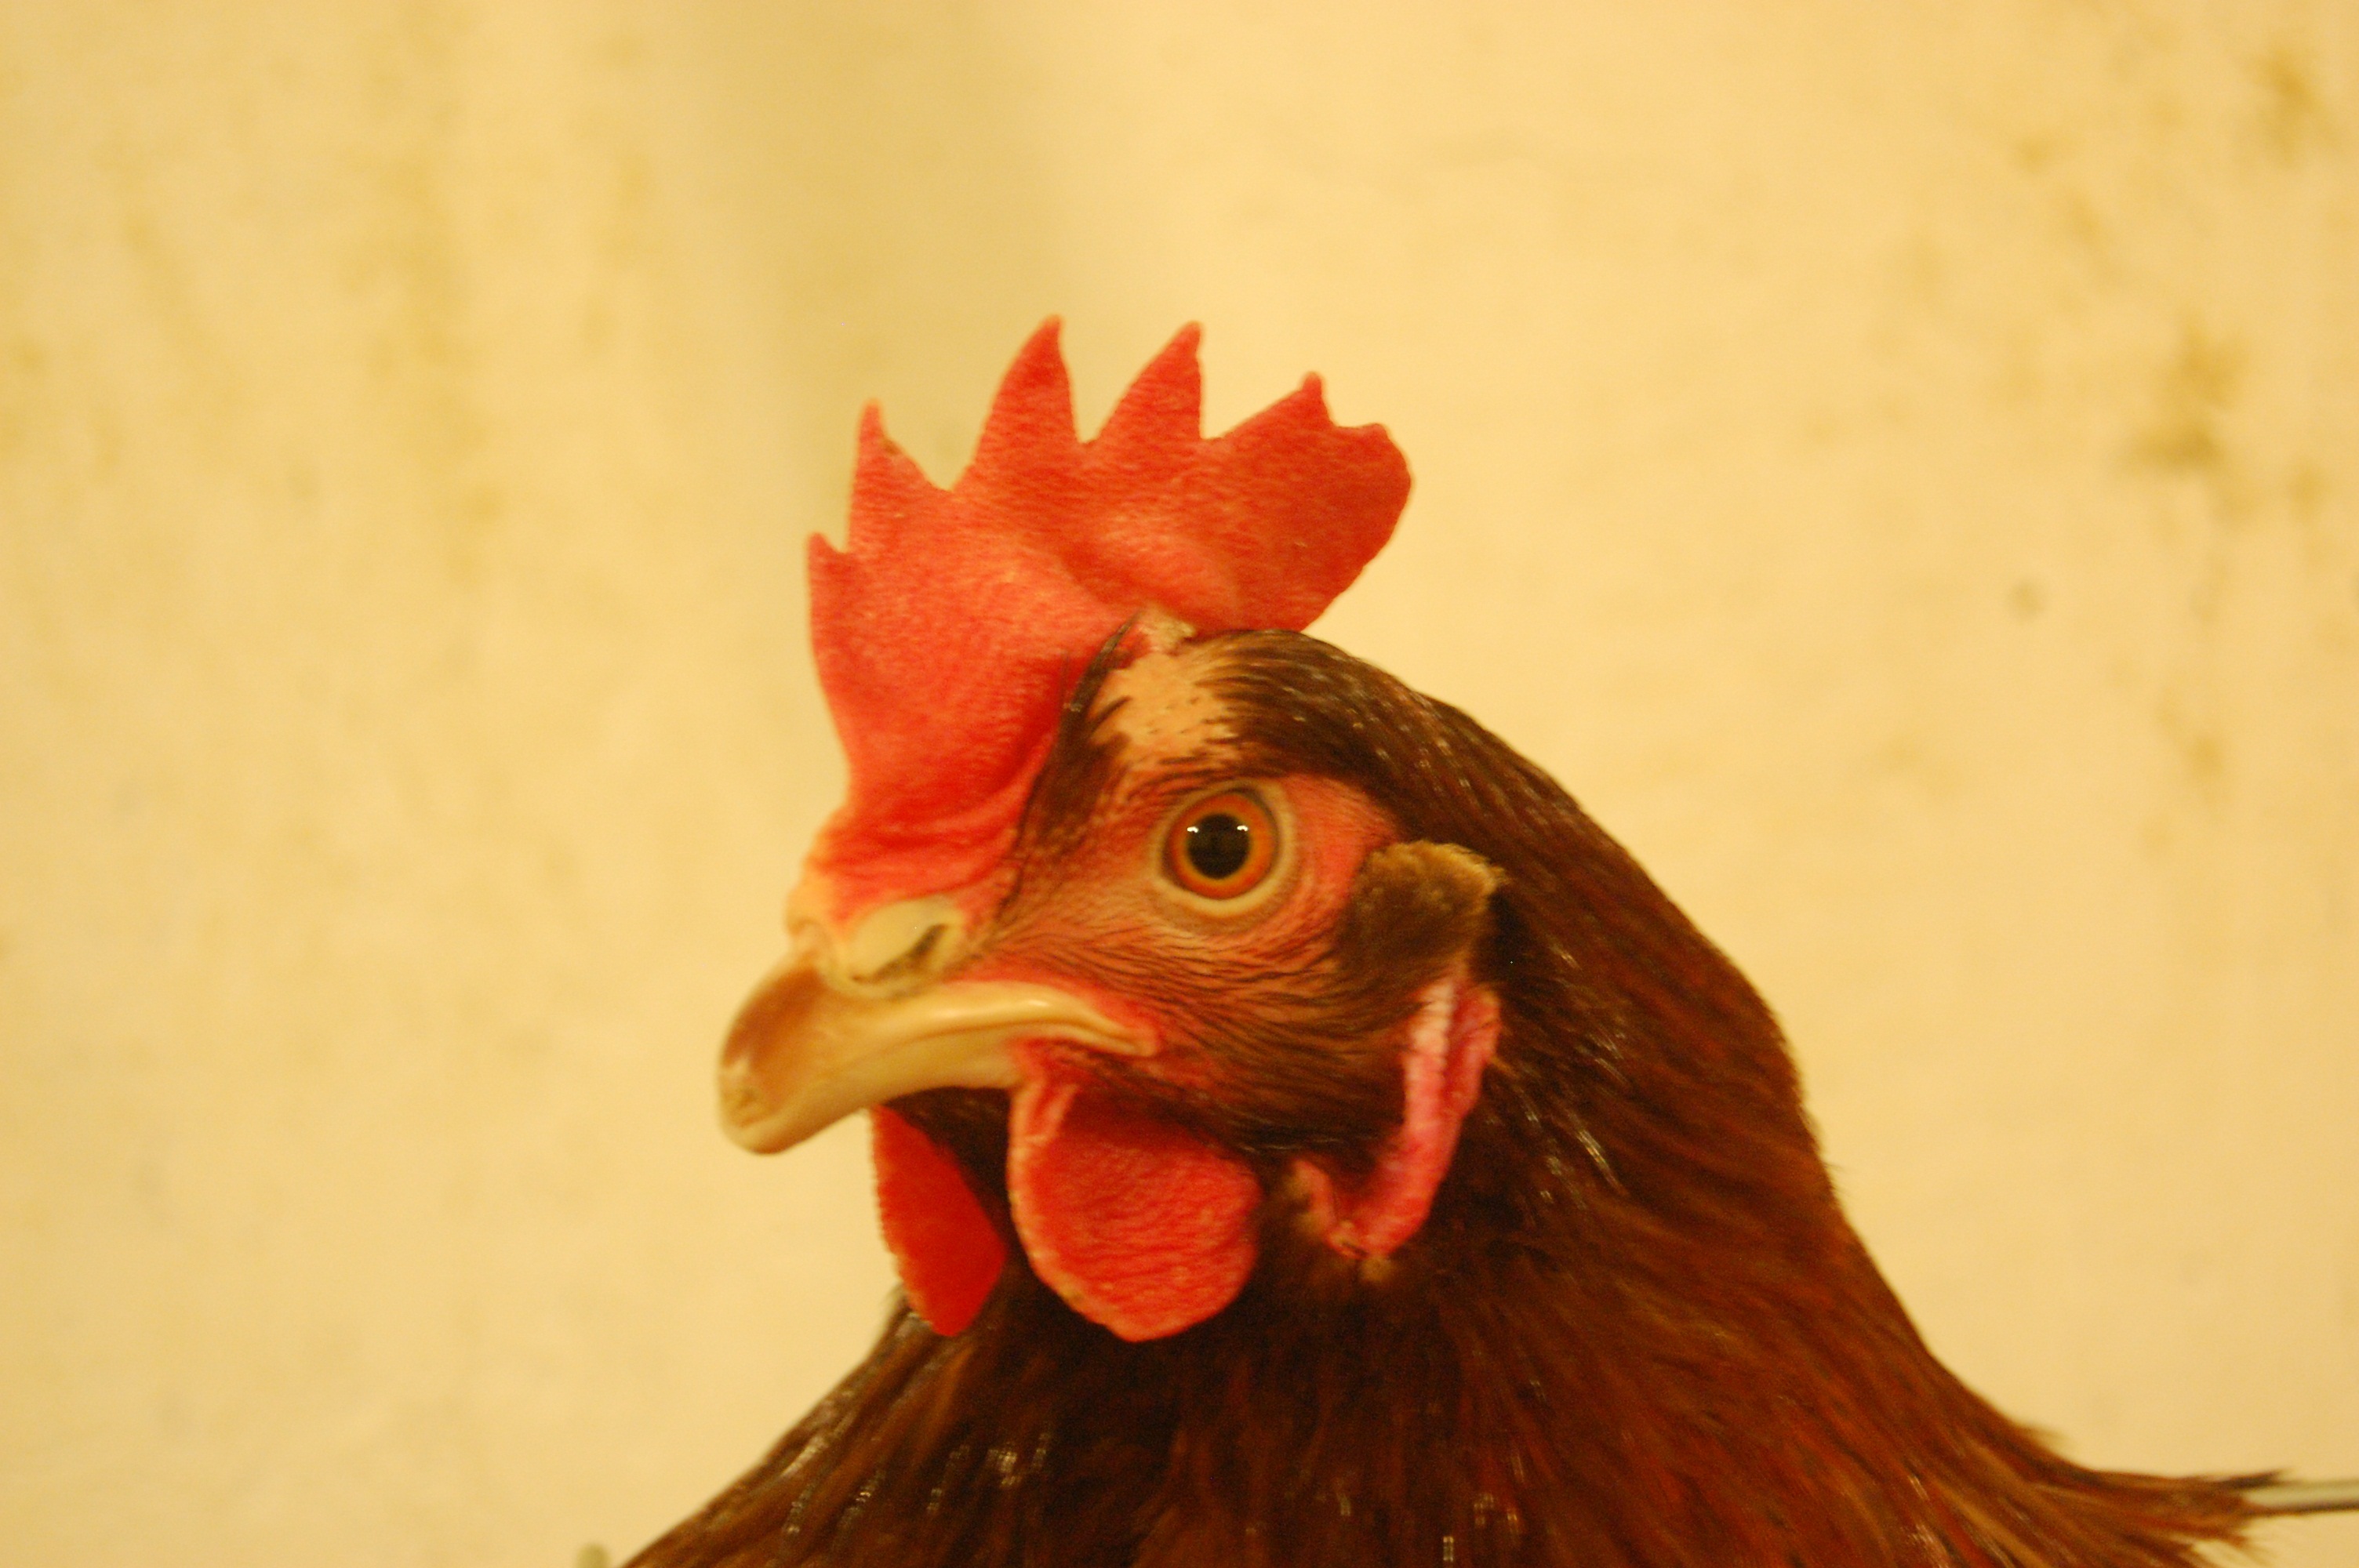 蛋鸡大肠杆菌 - 蛋鸡养殖(饲养管理,疾病防控) 鸡病专业网论坛